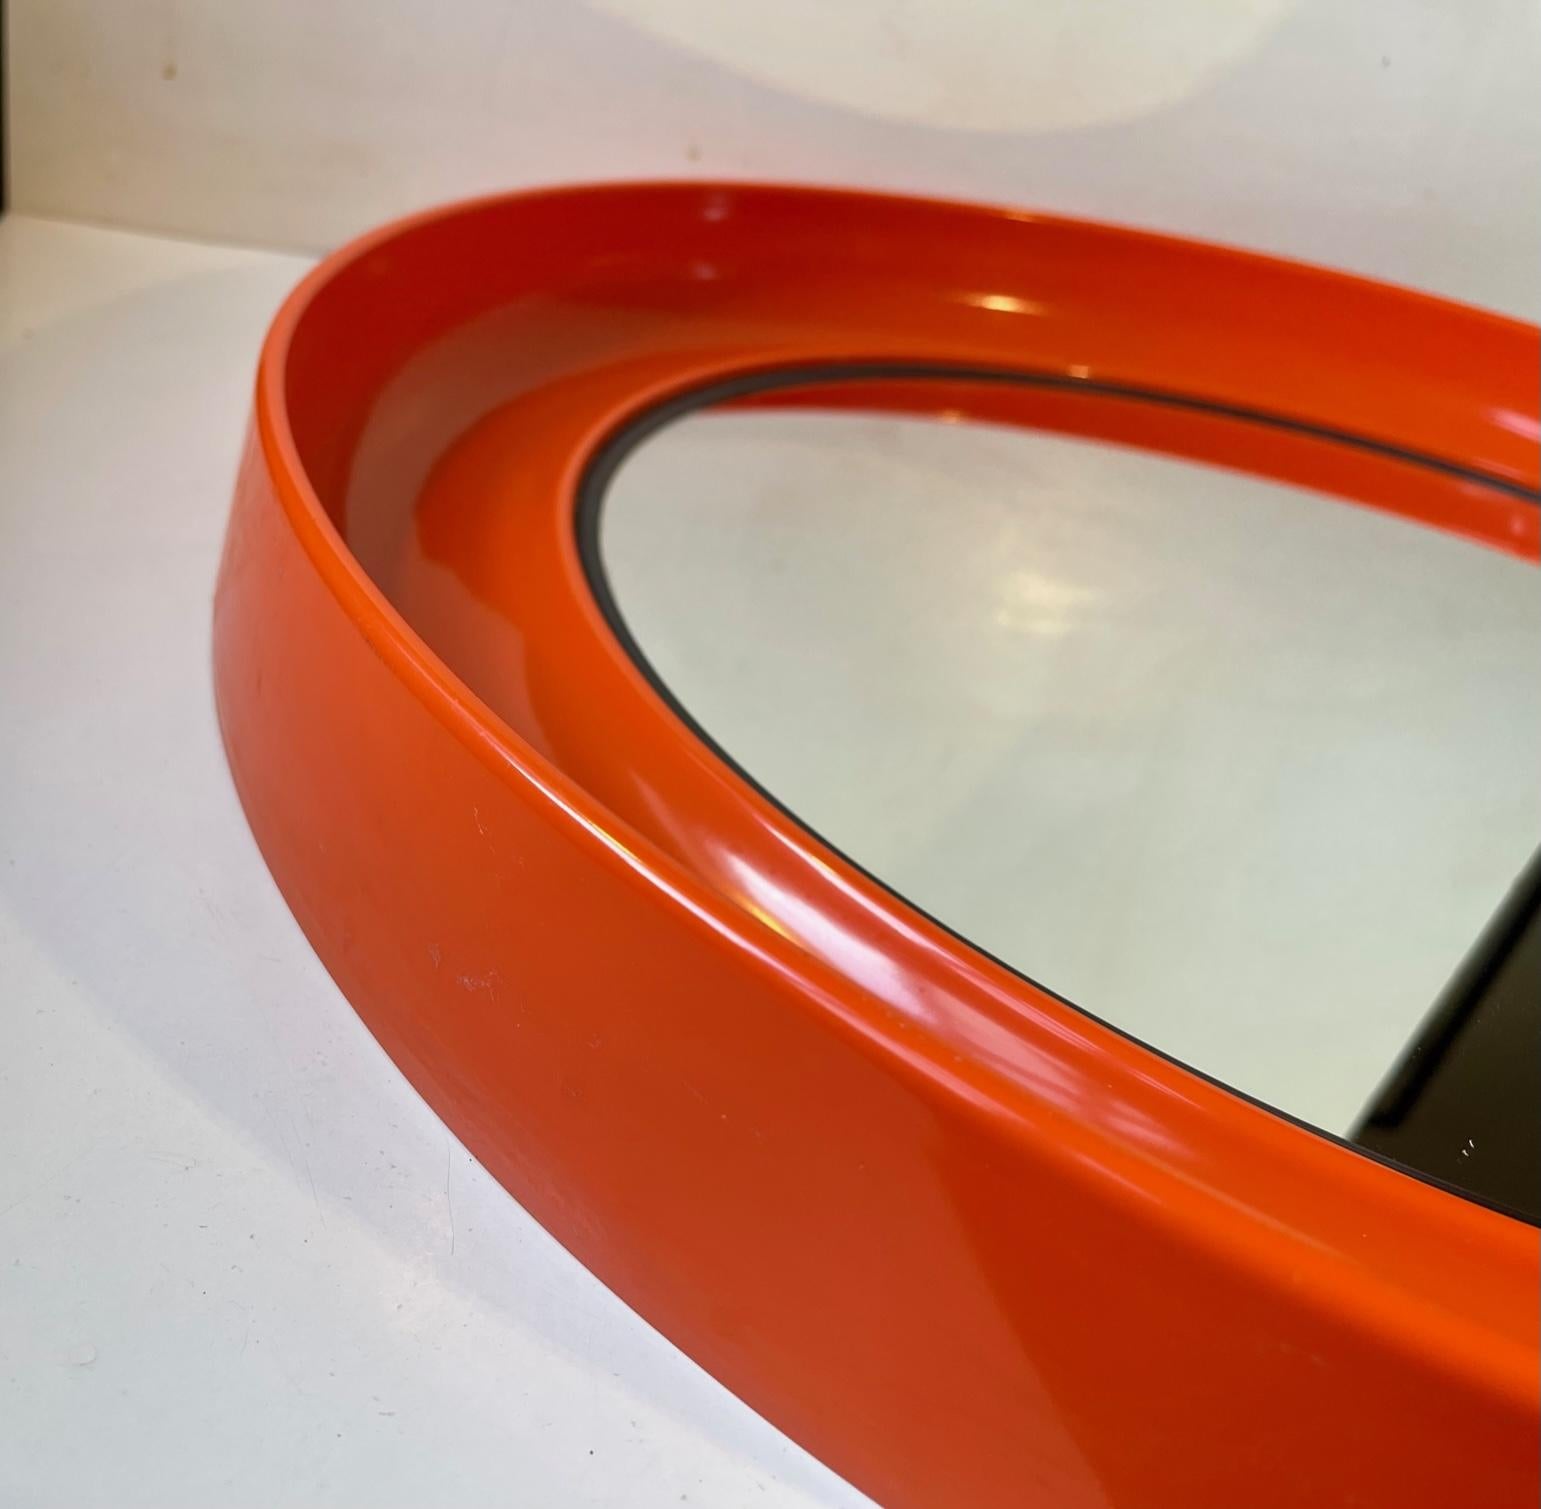 Un miroir mural rond et orange en plastique moulé. Magnifique. Lignes et courbes organiques. Fabriqué au Danemark dans les années 1970 par Termotex. Designer anonyme. Il comporte une fixation murale cachée pour une seule vis. Mesures : D : 54 cm,